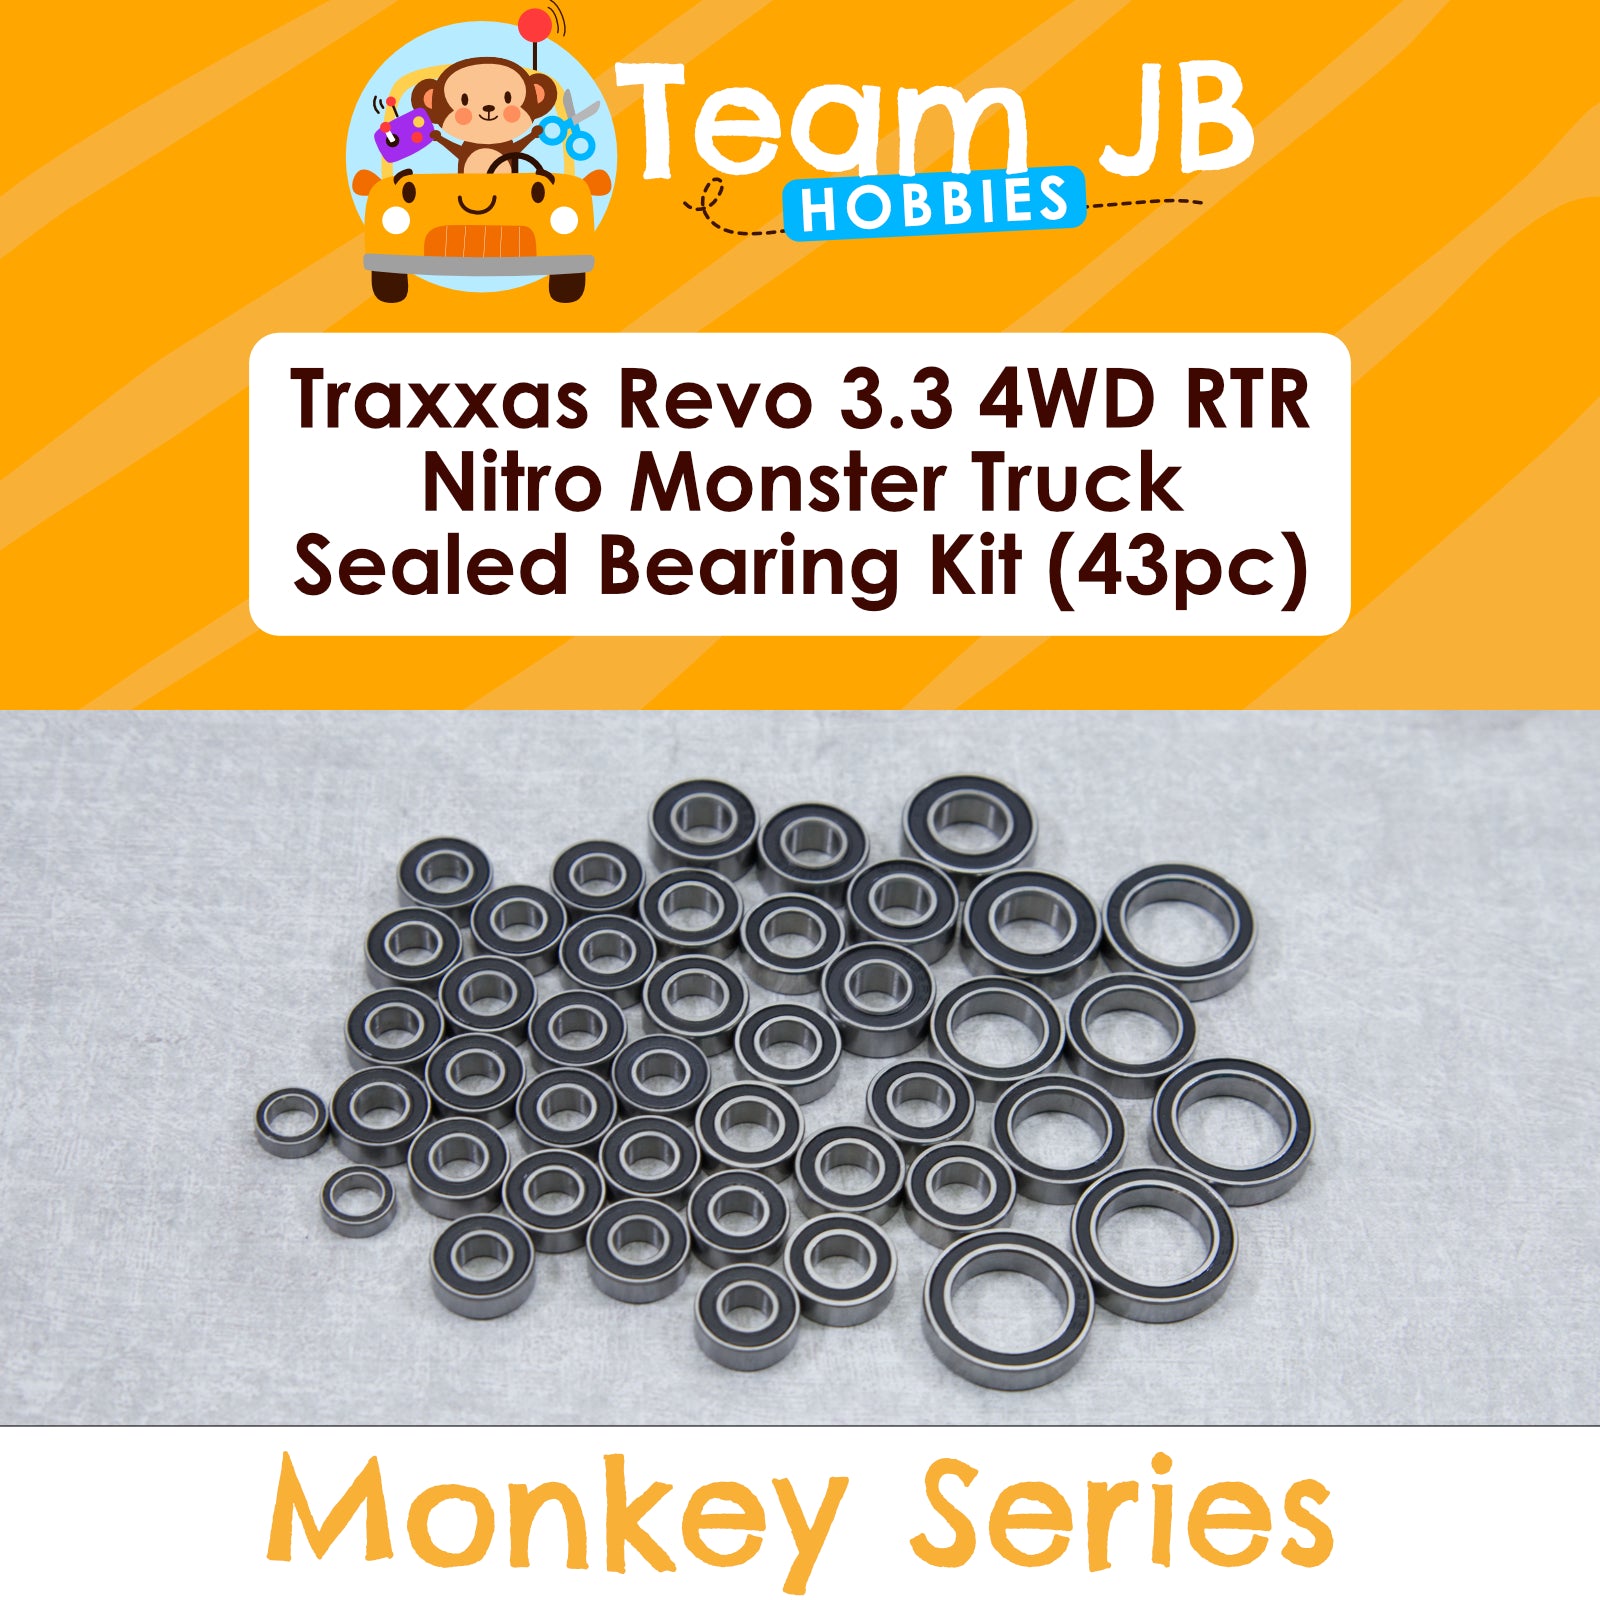 Traxxas Revo 3.3 4WD RTR Nitro Monster Truck - Sealed Bearing Kit